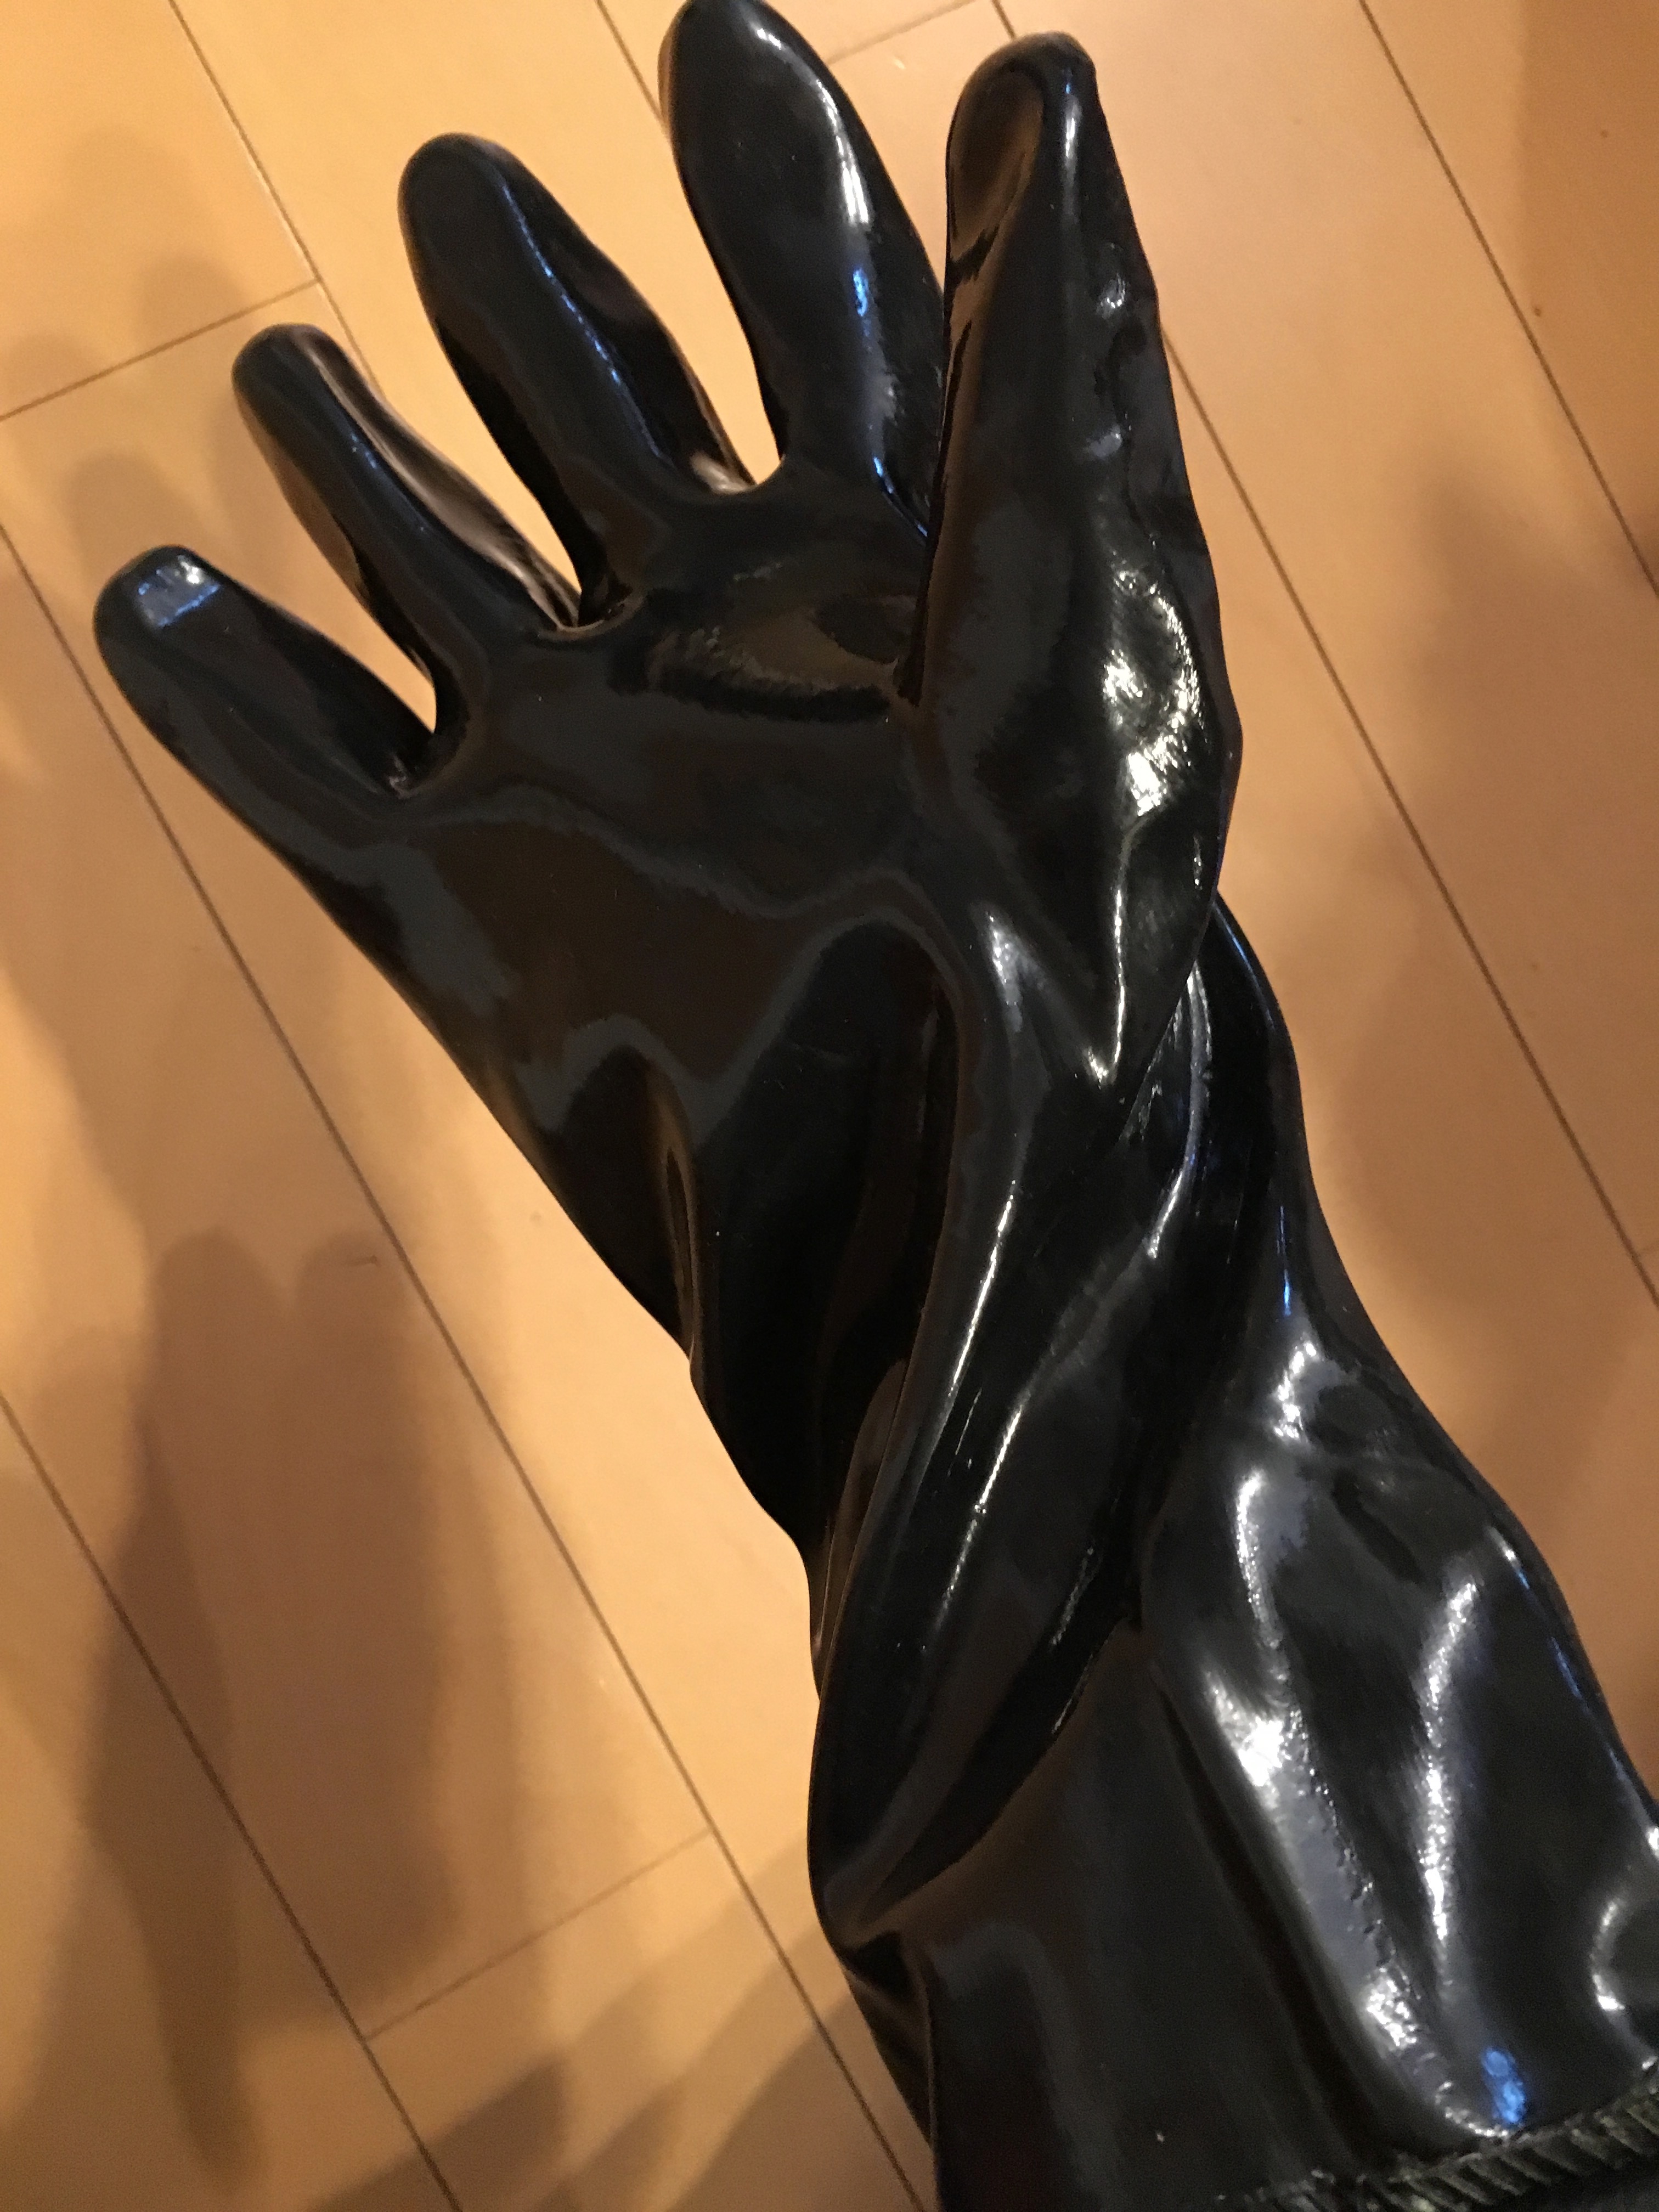 Sablux glove